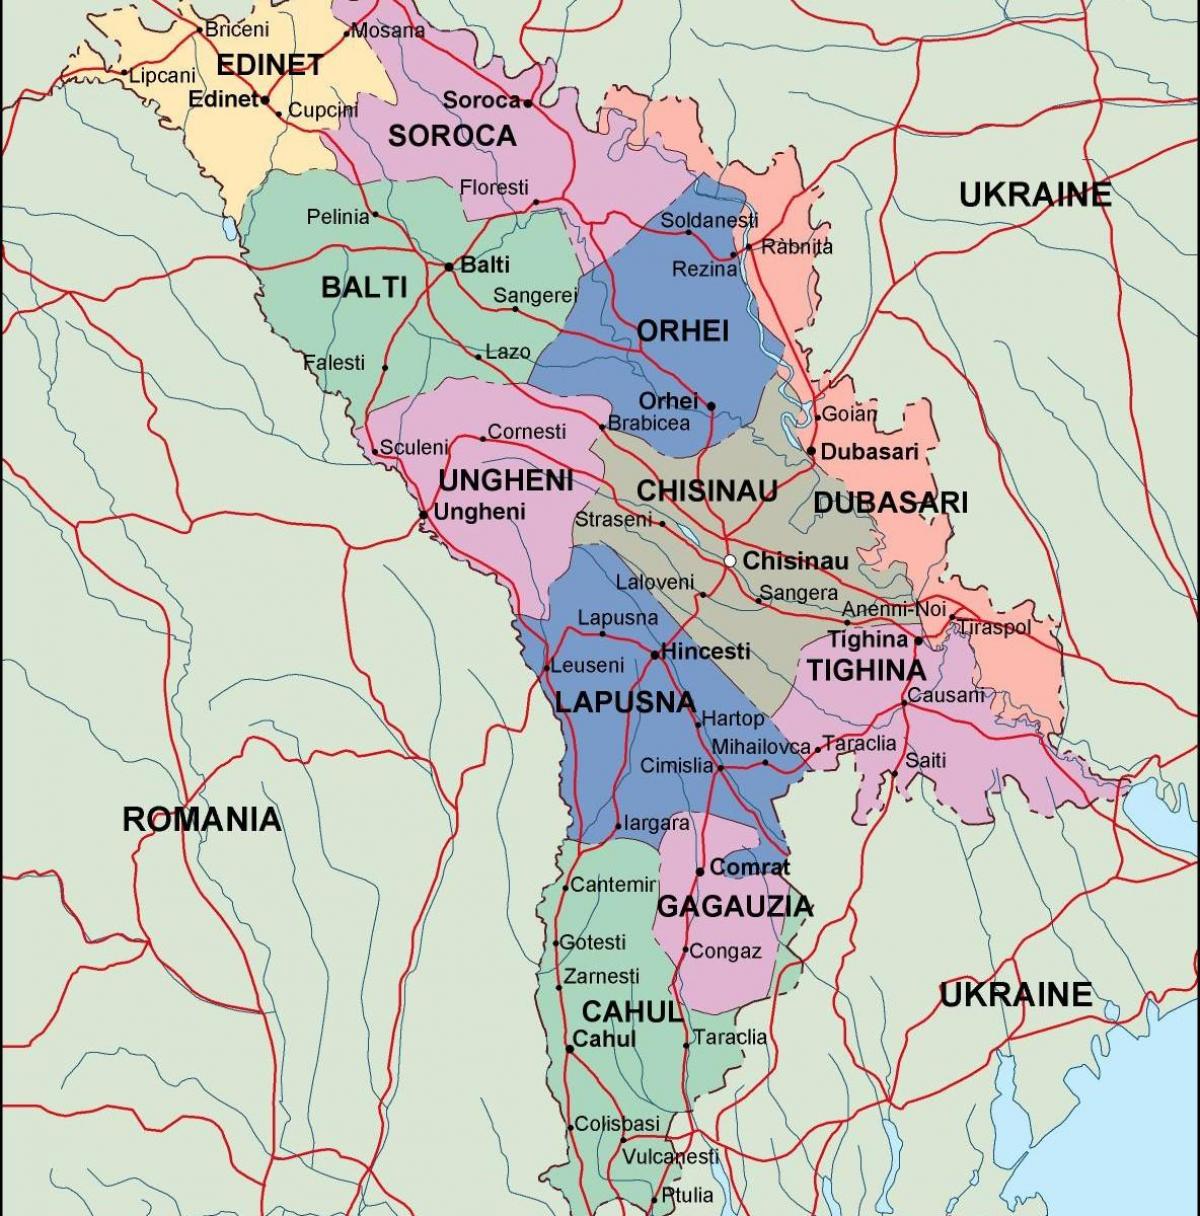 Peta Moldova politik